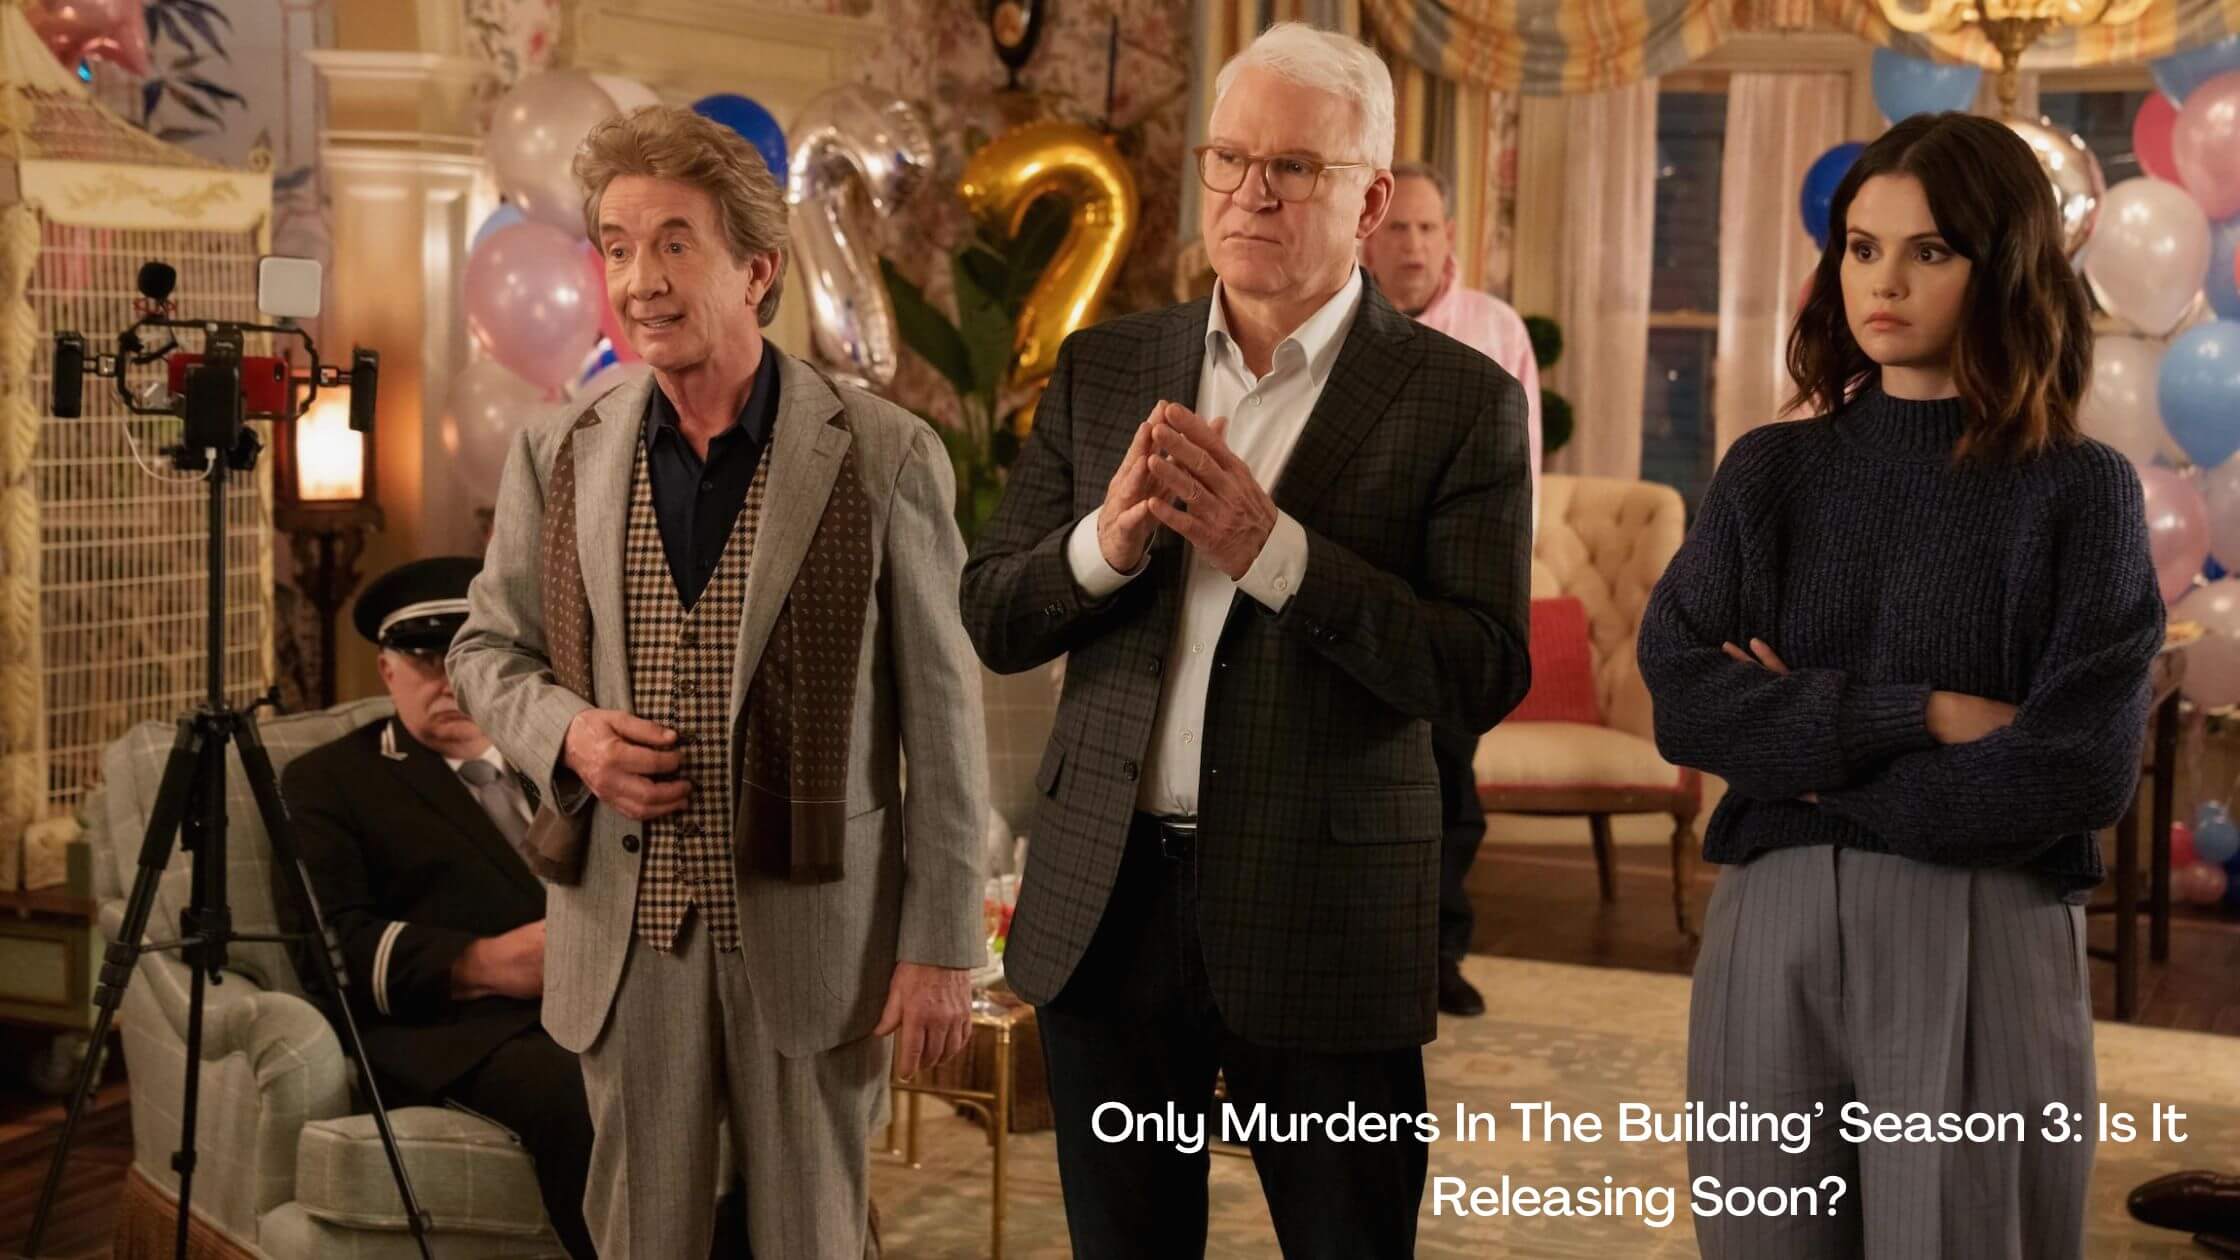 Only Murders In The Building’ Season 3: Is It Releasing Soon?